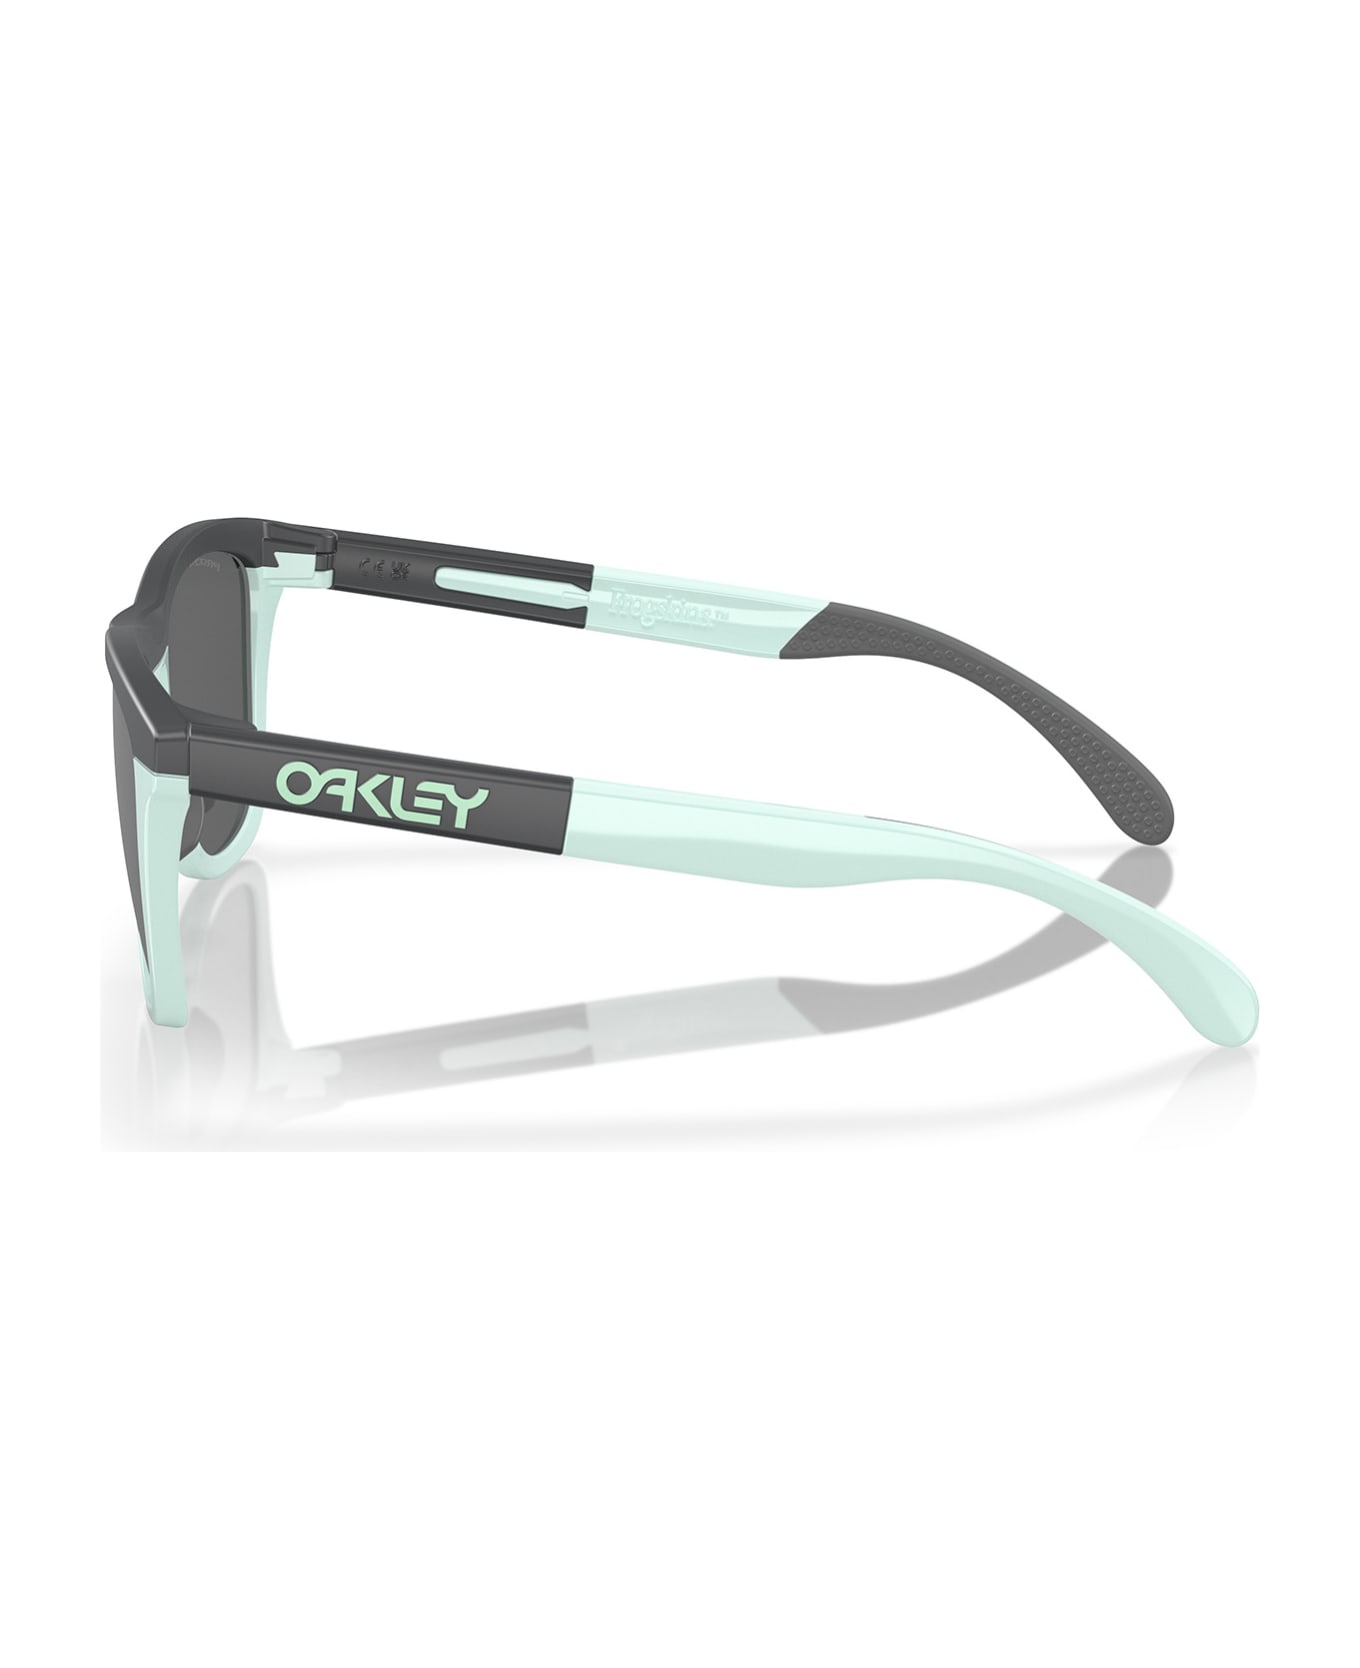 Oakley Oo9284 Matte Carbon / Blue Milkshake Sunglasses - Matte Carbon / Blue Milkshake